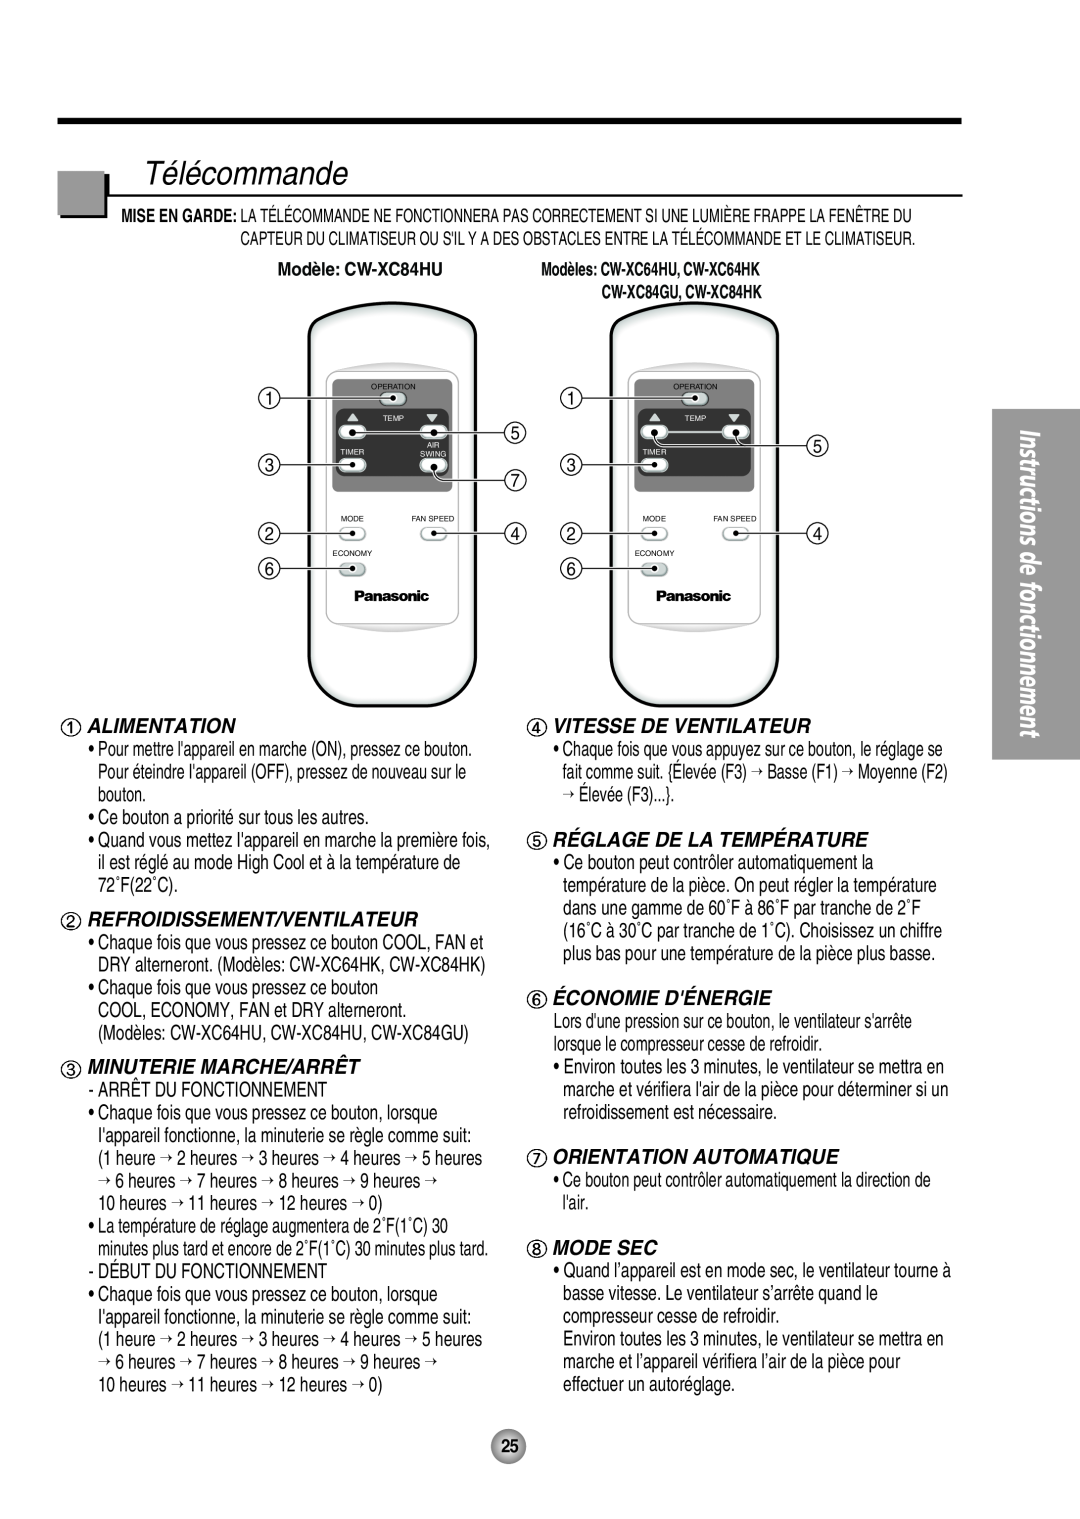 Panasonic CW-XC64HU manual Télécommande, Mode Sec, Alimentation, Refroidissement/Ventilateur, Vitesse De Ventilateur 